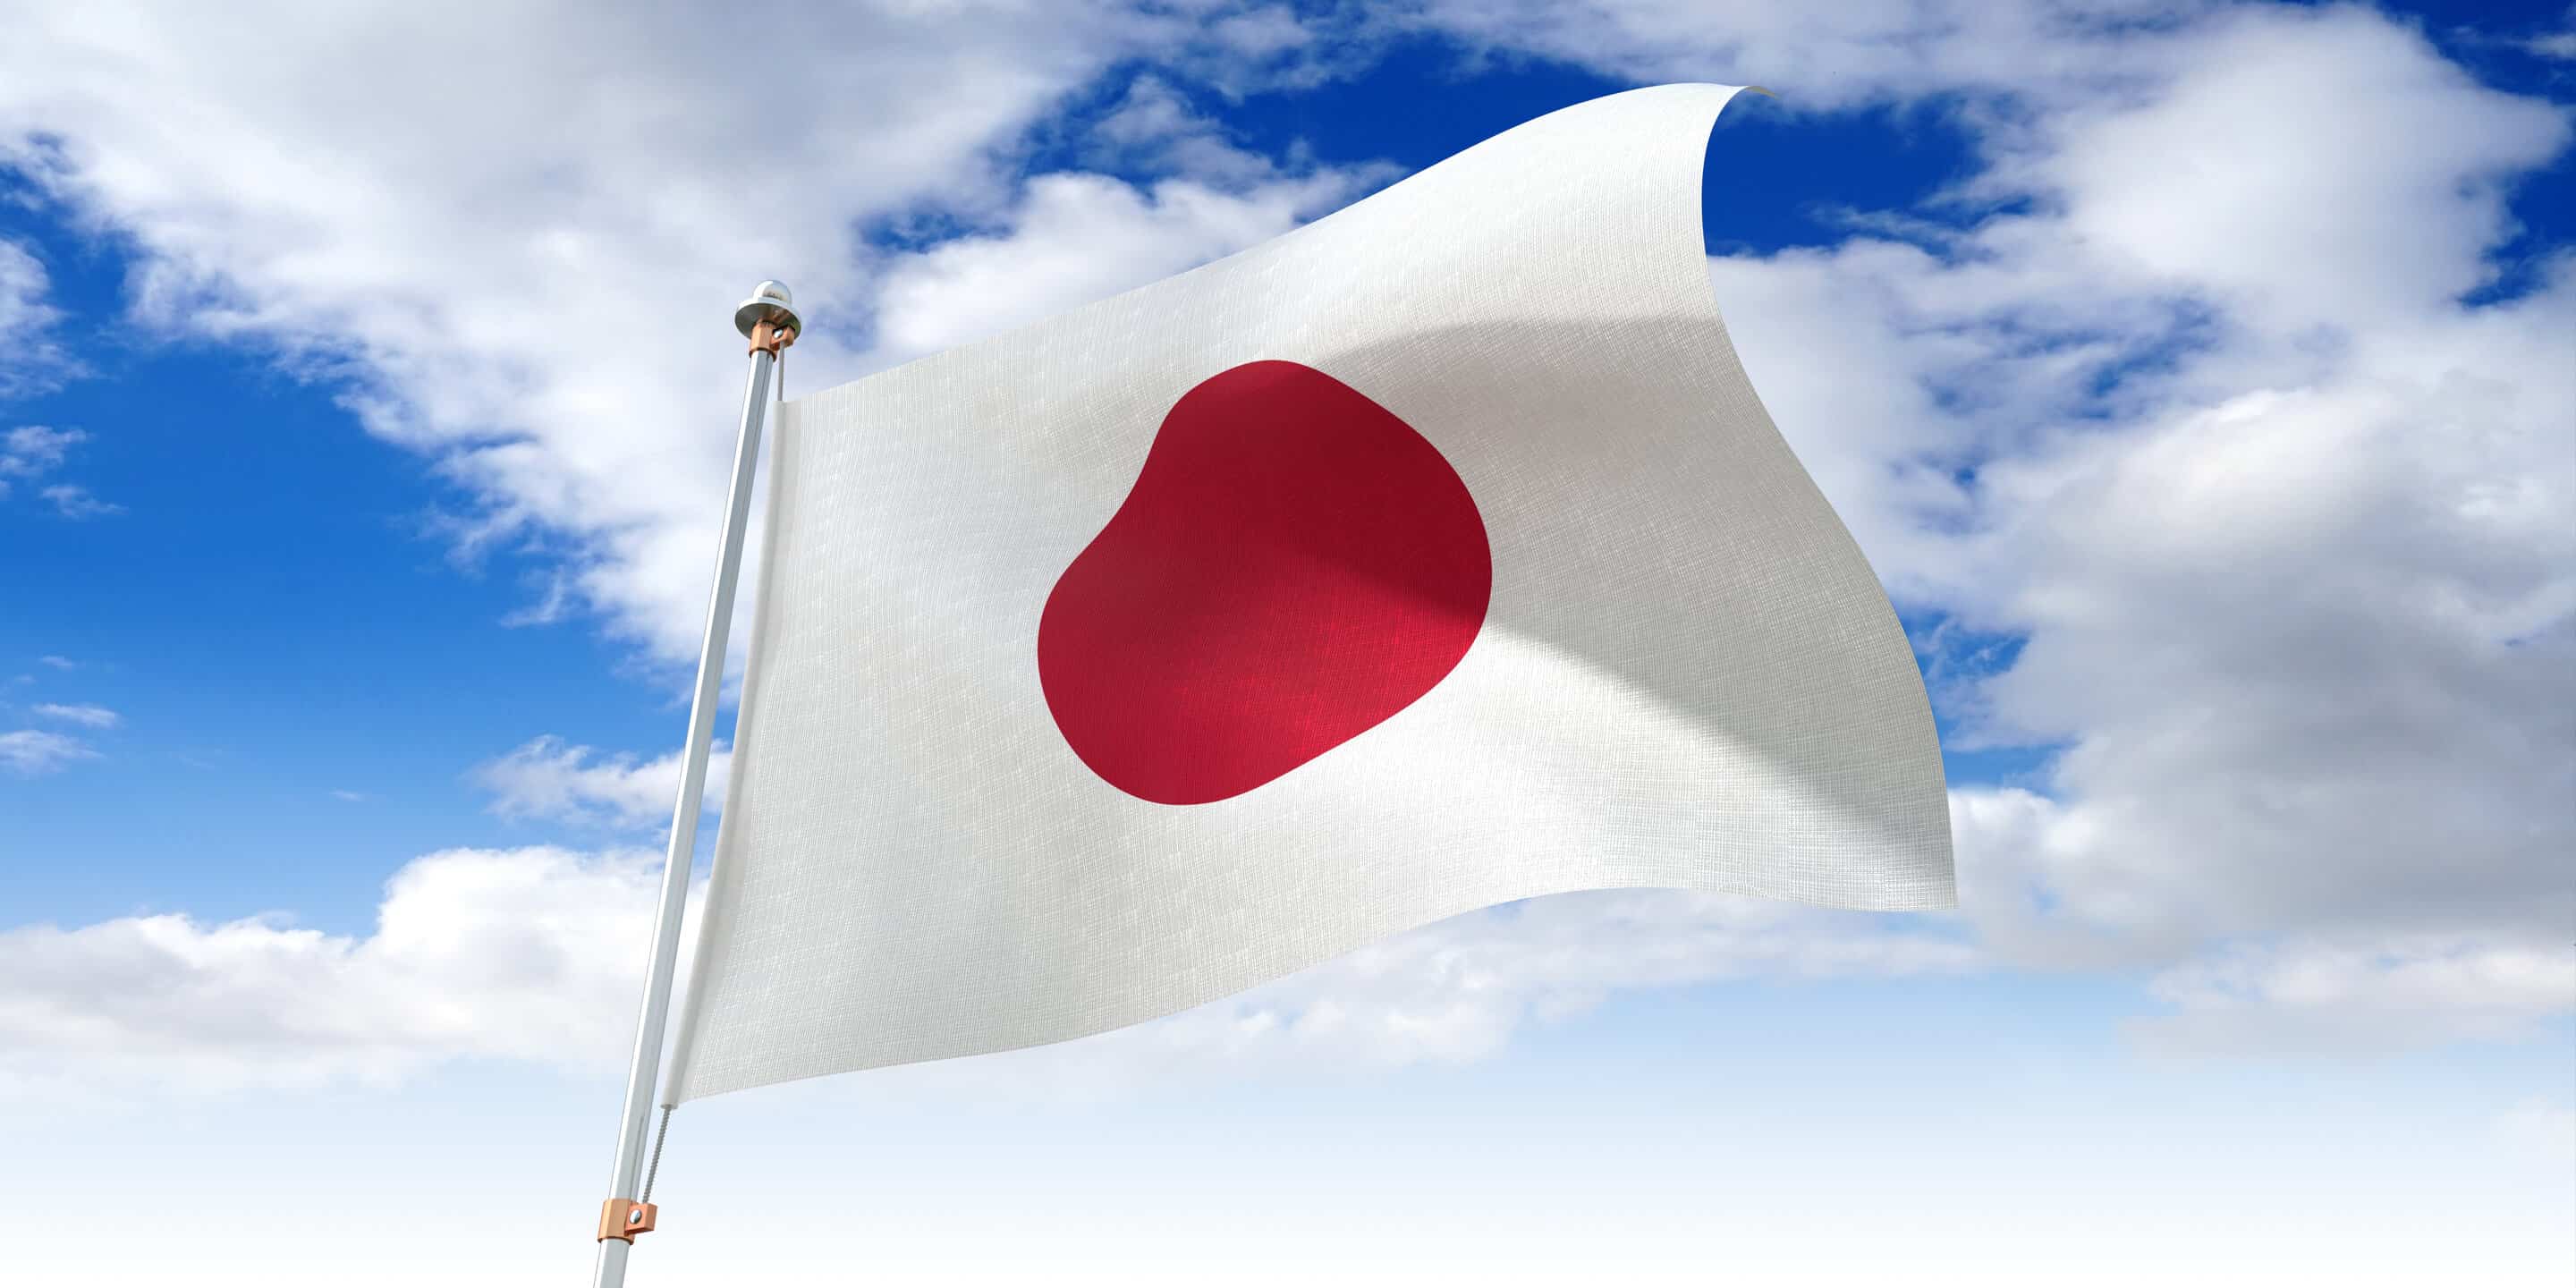 تتجاوز 112 تريليون ين .. اليابان تكشف ميزانية سنوية جديدة تتضمن نفقات دفاعية قياسية